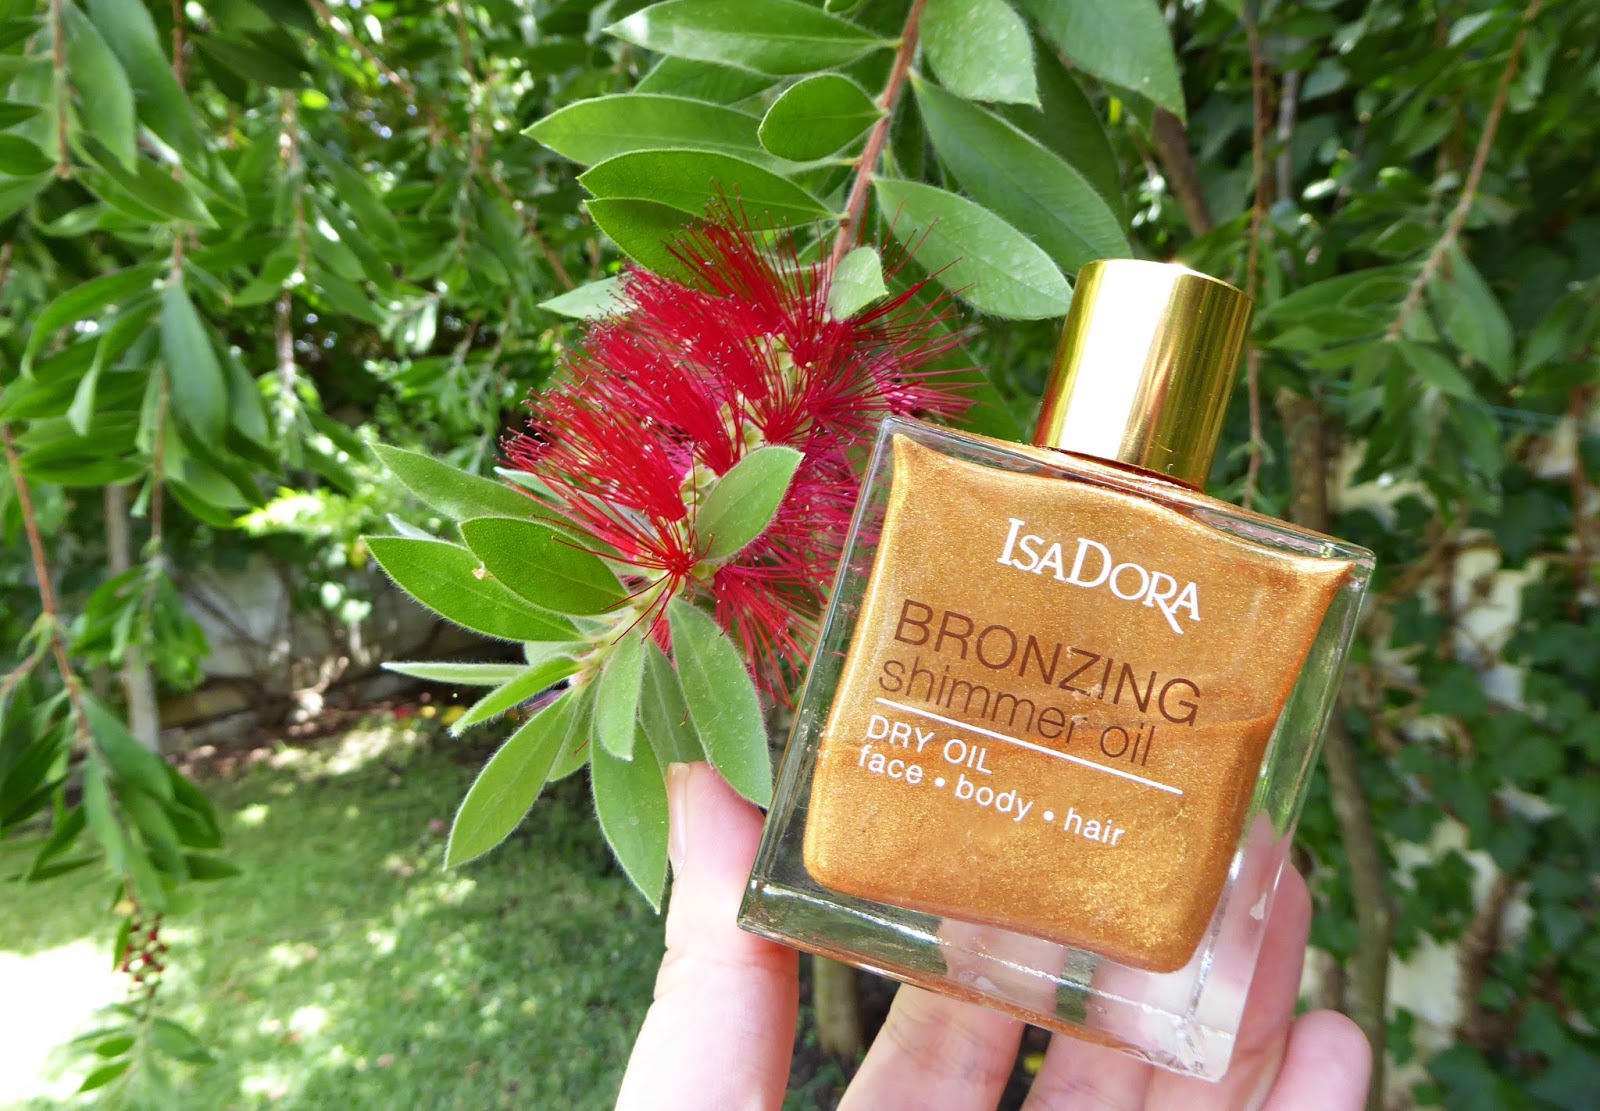 Cómo broncear las piernas sin sol (y disimular venas y varices): Bronzing shimmer oil de Isadora